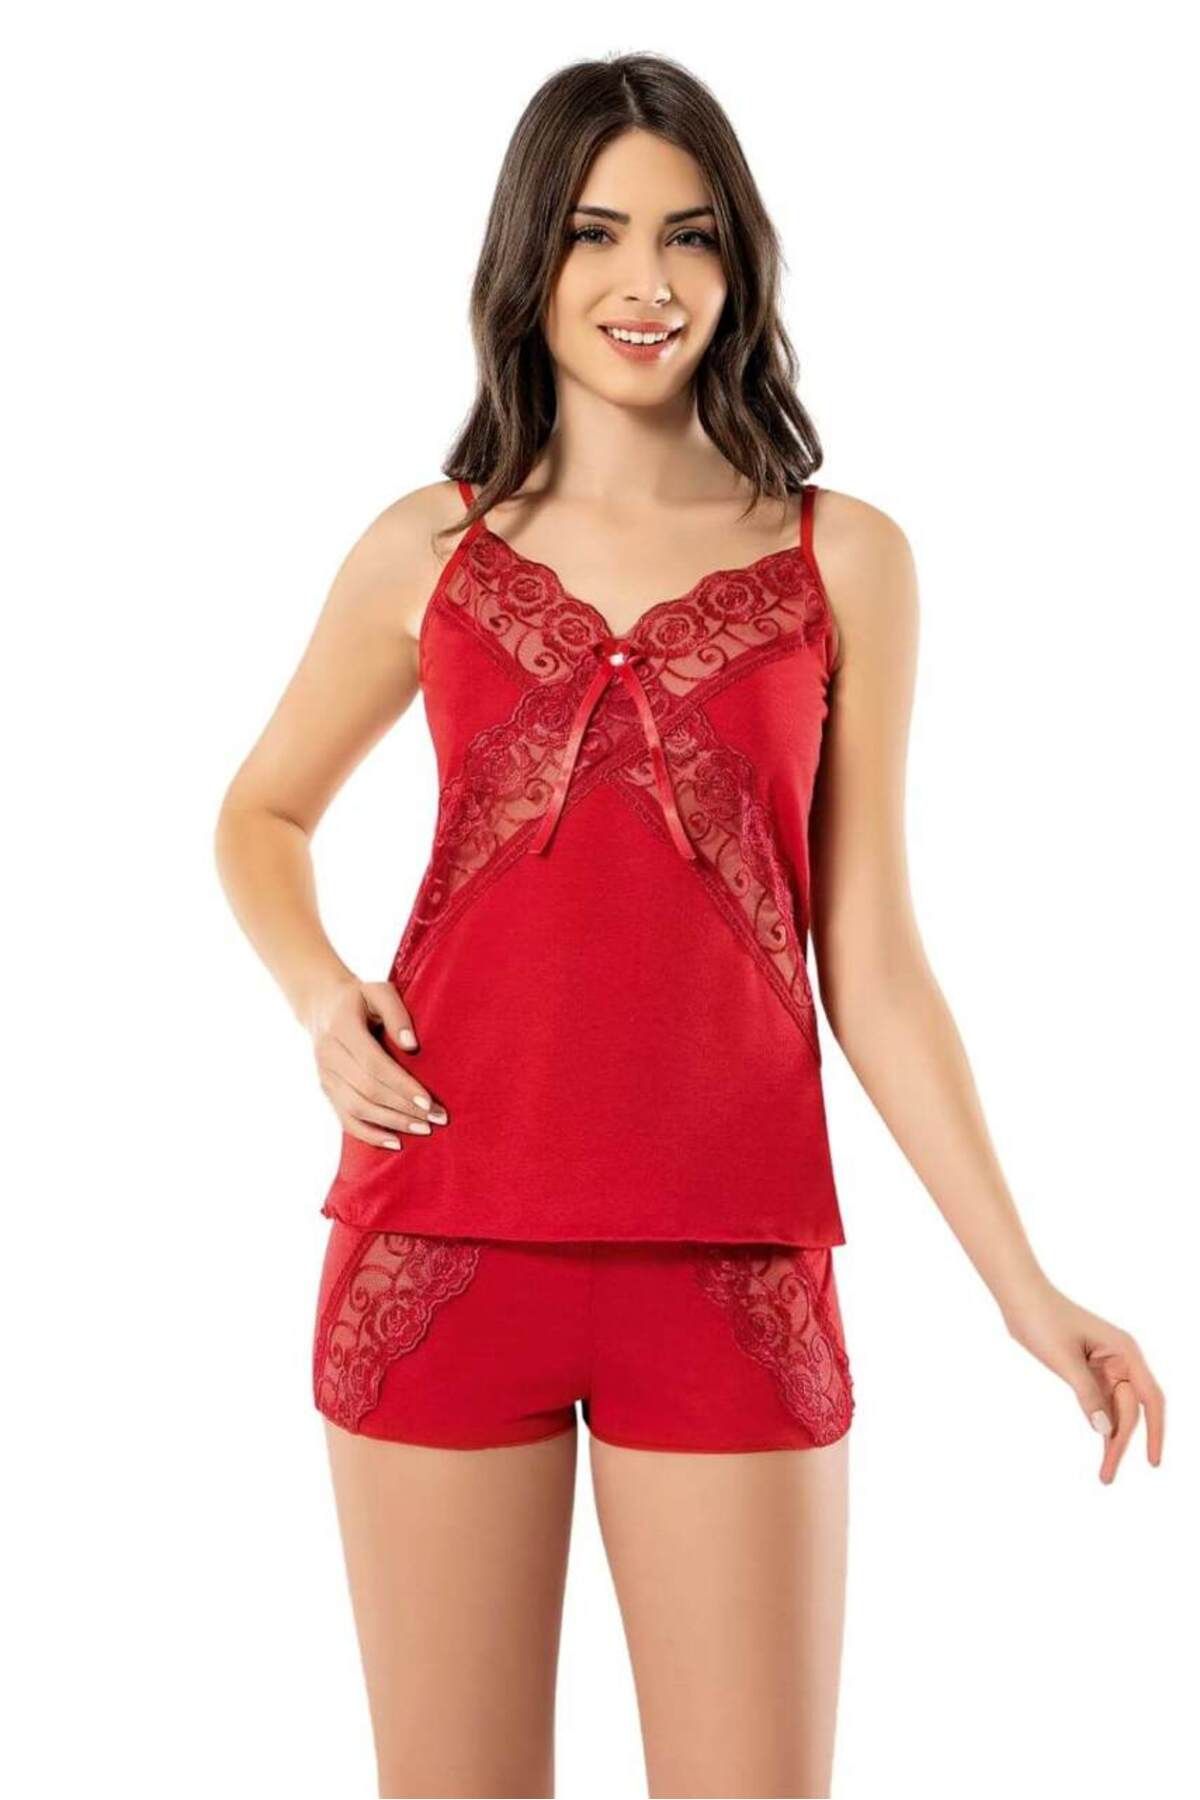 MENBOX Kadın Kırmızı Çapraz Dantelli Şortlu Takım Ev Giyim Pijama Gecelik 6339